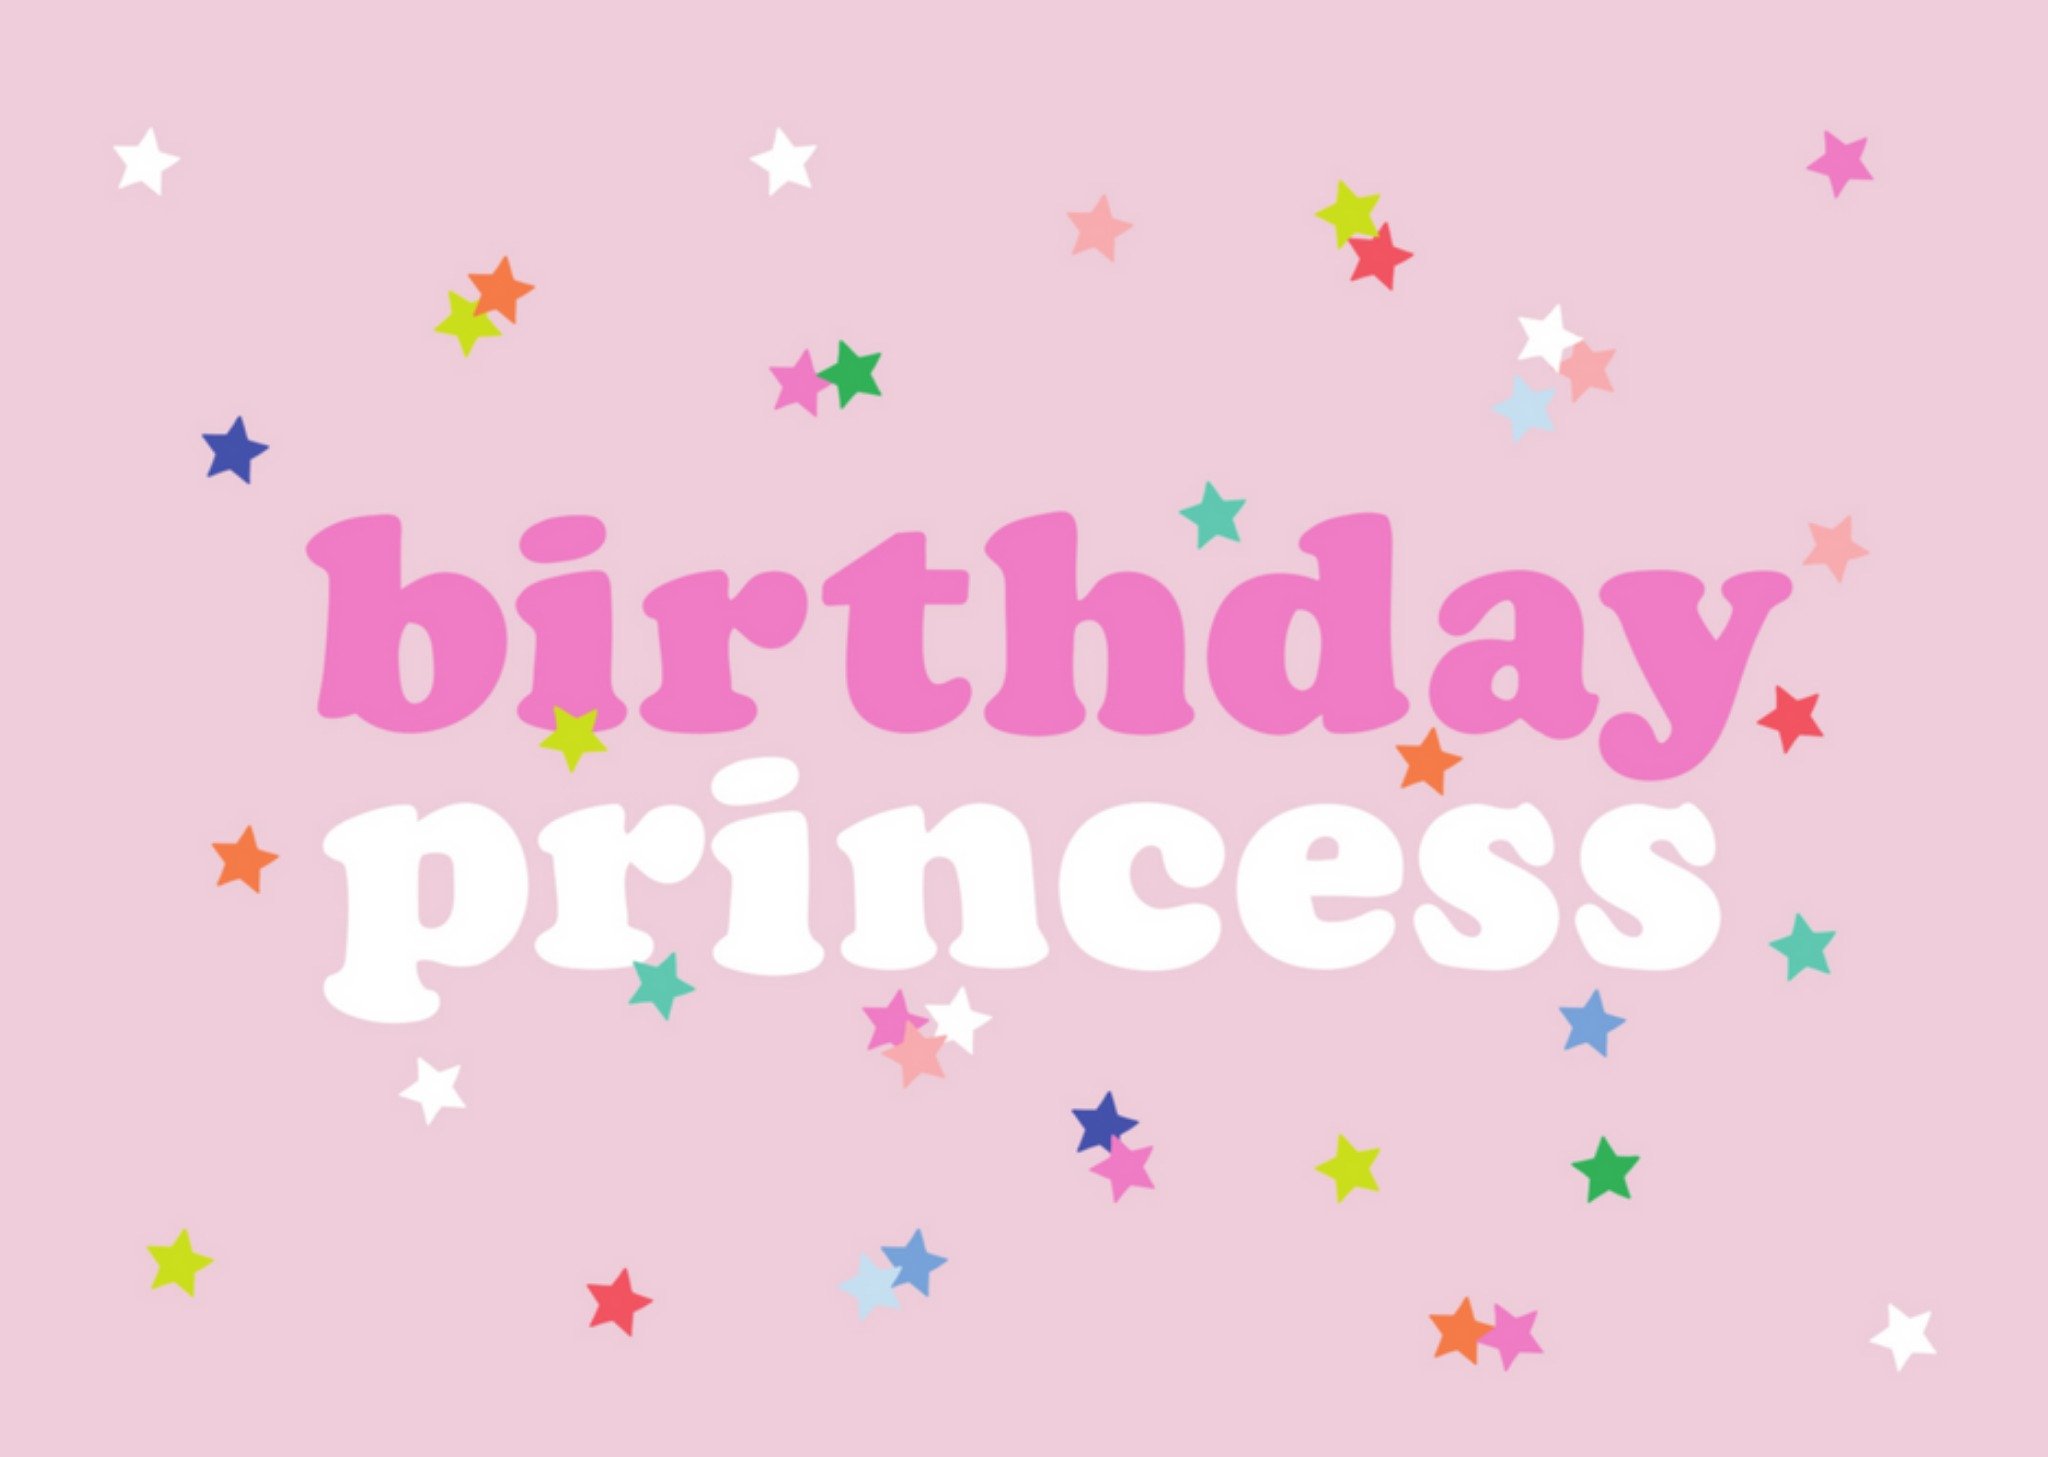 Verjaardagskaart - birthday princess